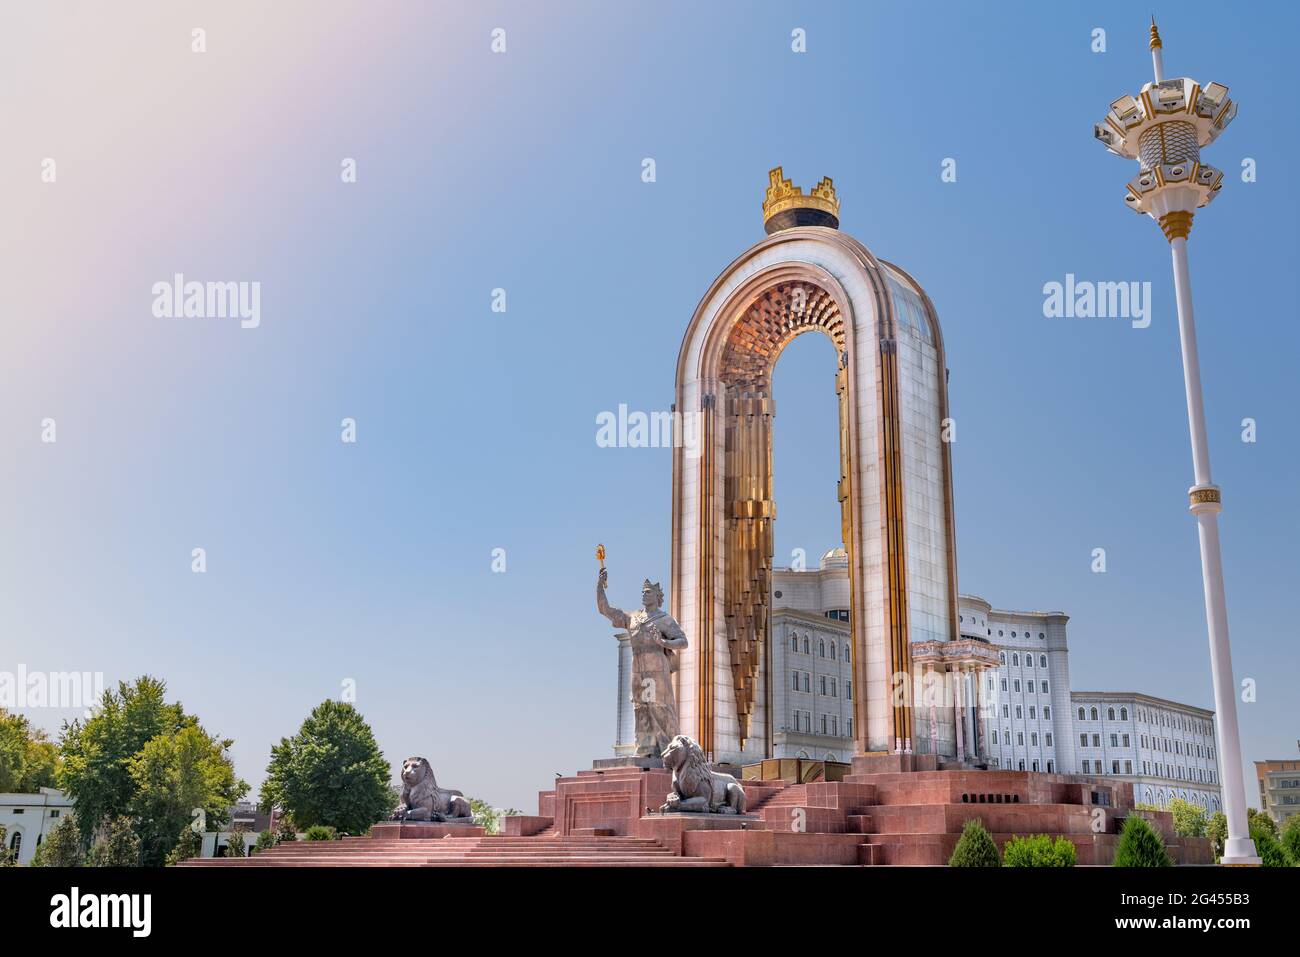 La place centrale dans la capitale du Tadjikistan - Douchanbé. La statue du héros national - recherche Résultats du Web Ismoil Somoni Banque D'Images